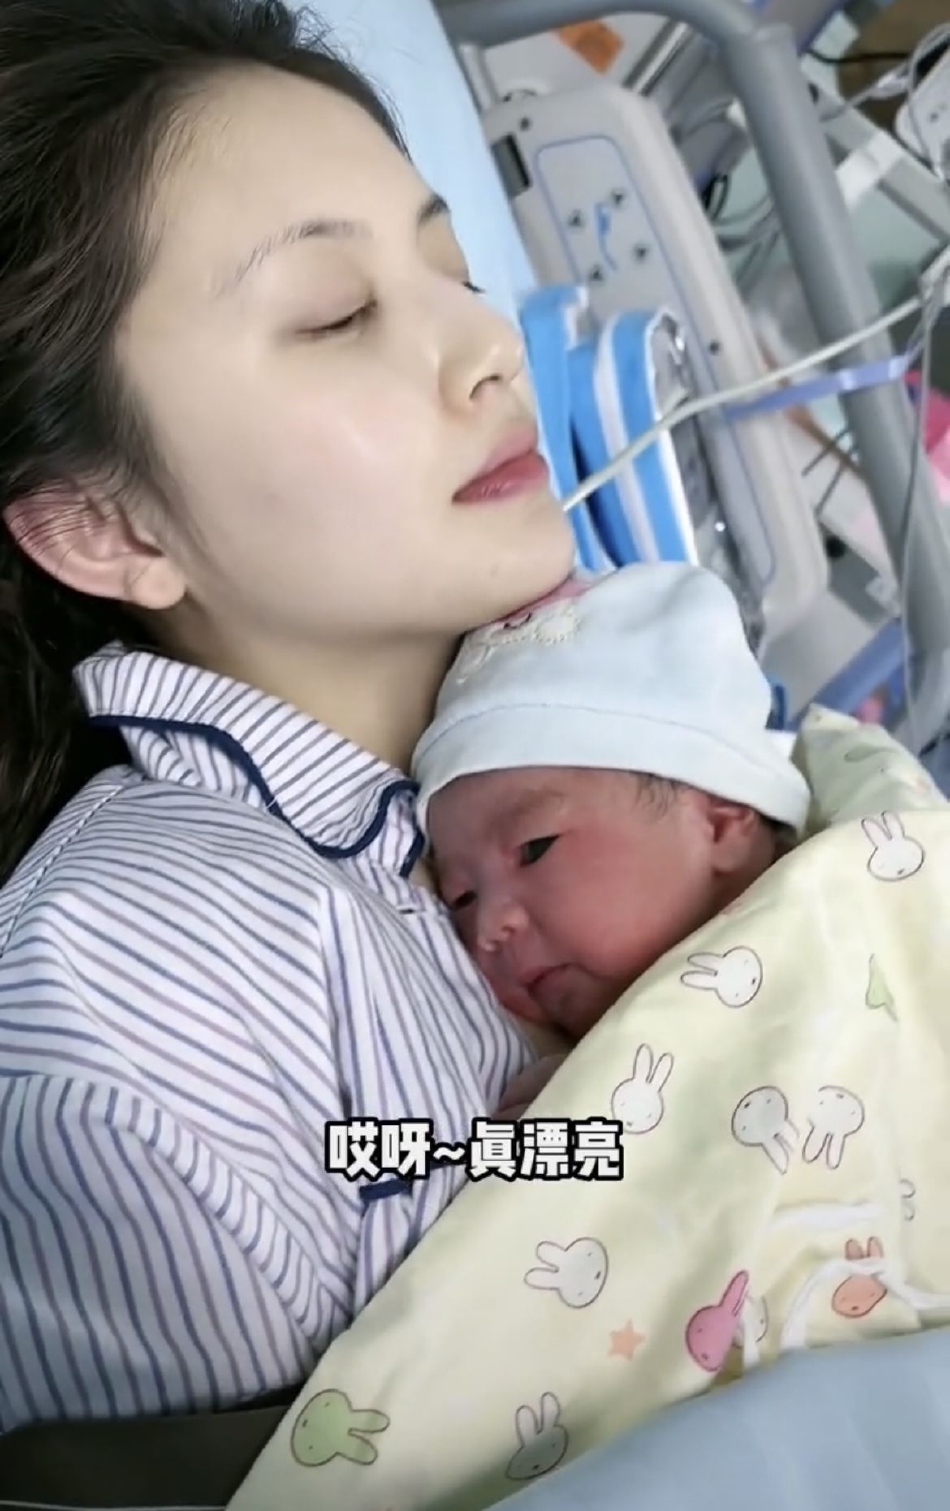 组图:王思聪前女友甜仇产子 抱孩子出镜皮肤白皙温馨有爱